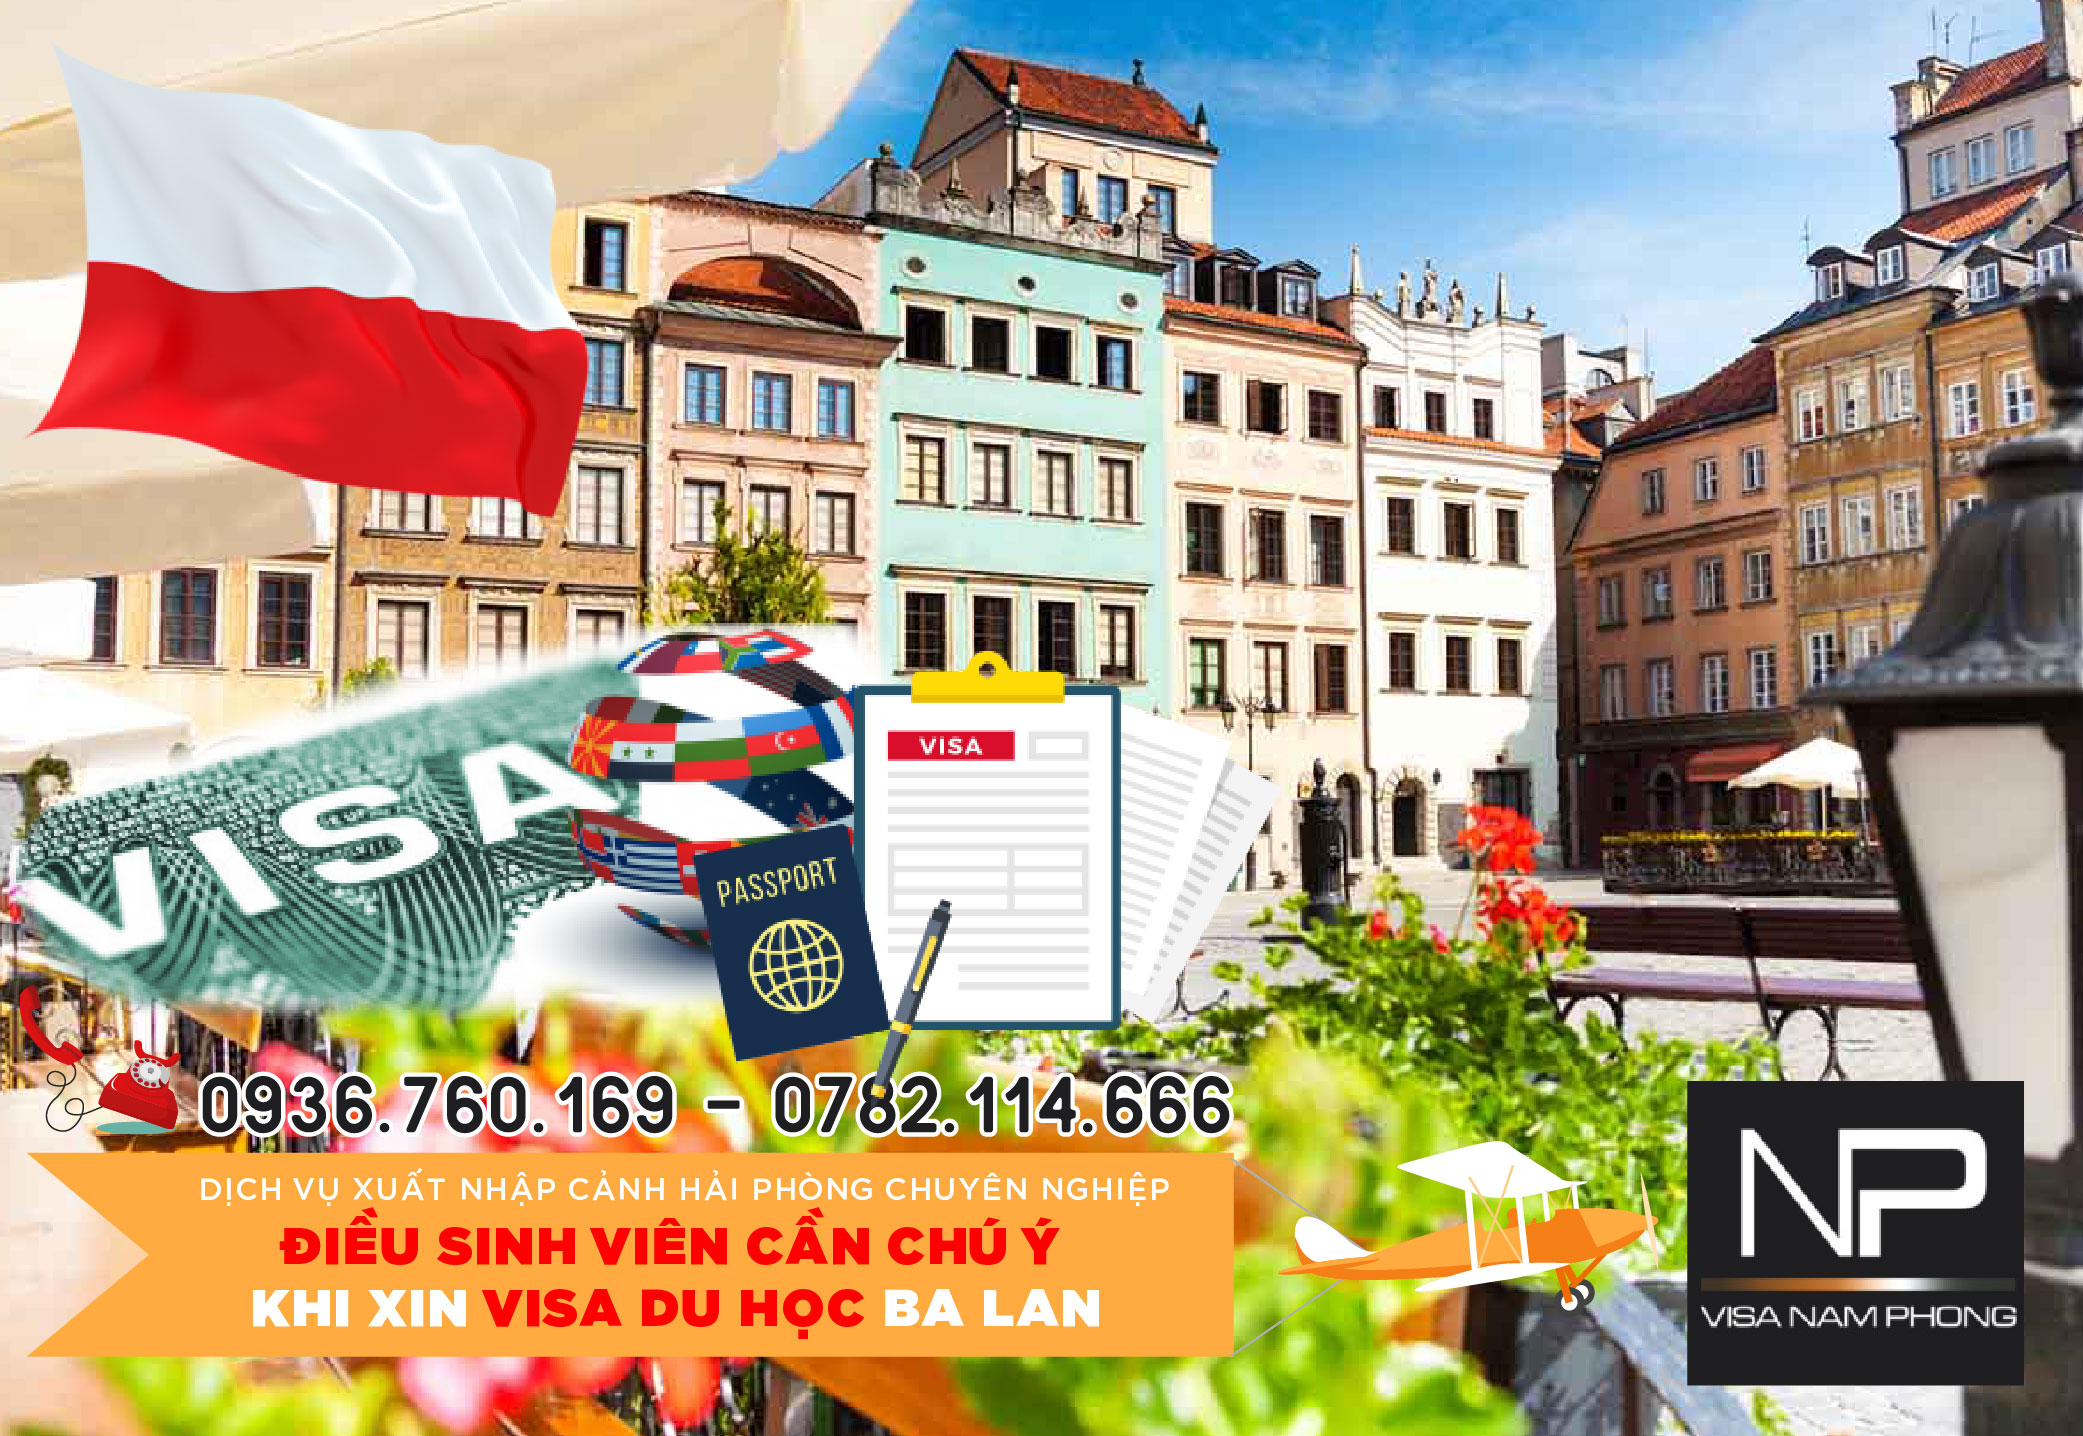 Tư vấn điều cần chú ý khi xin Visa du học Ba Lan tại Hải Phòng